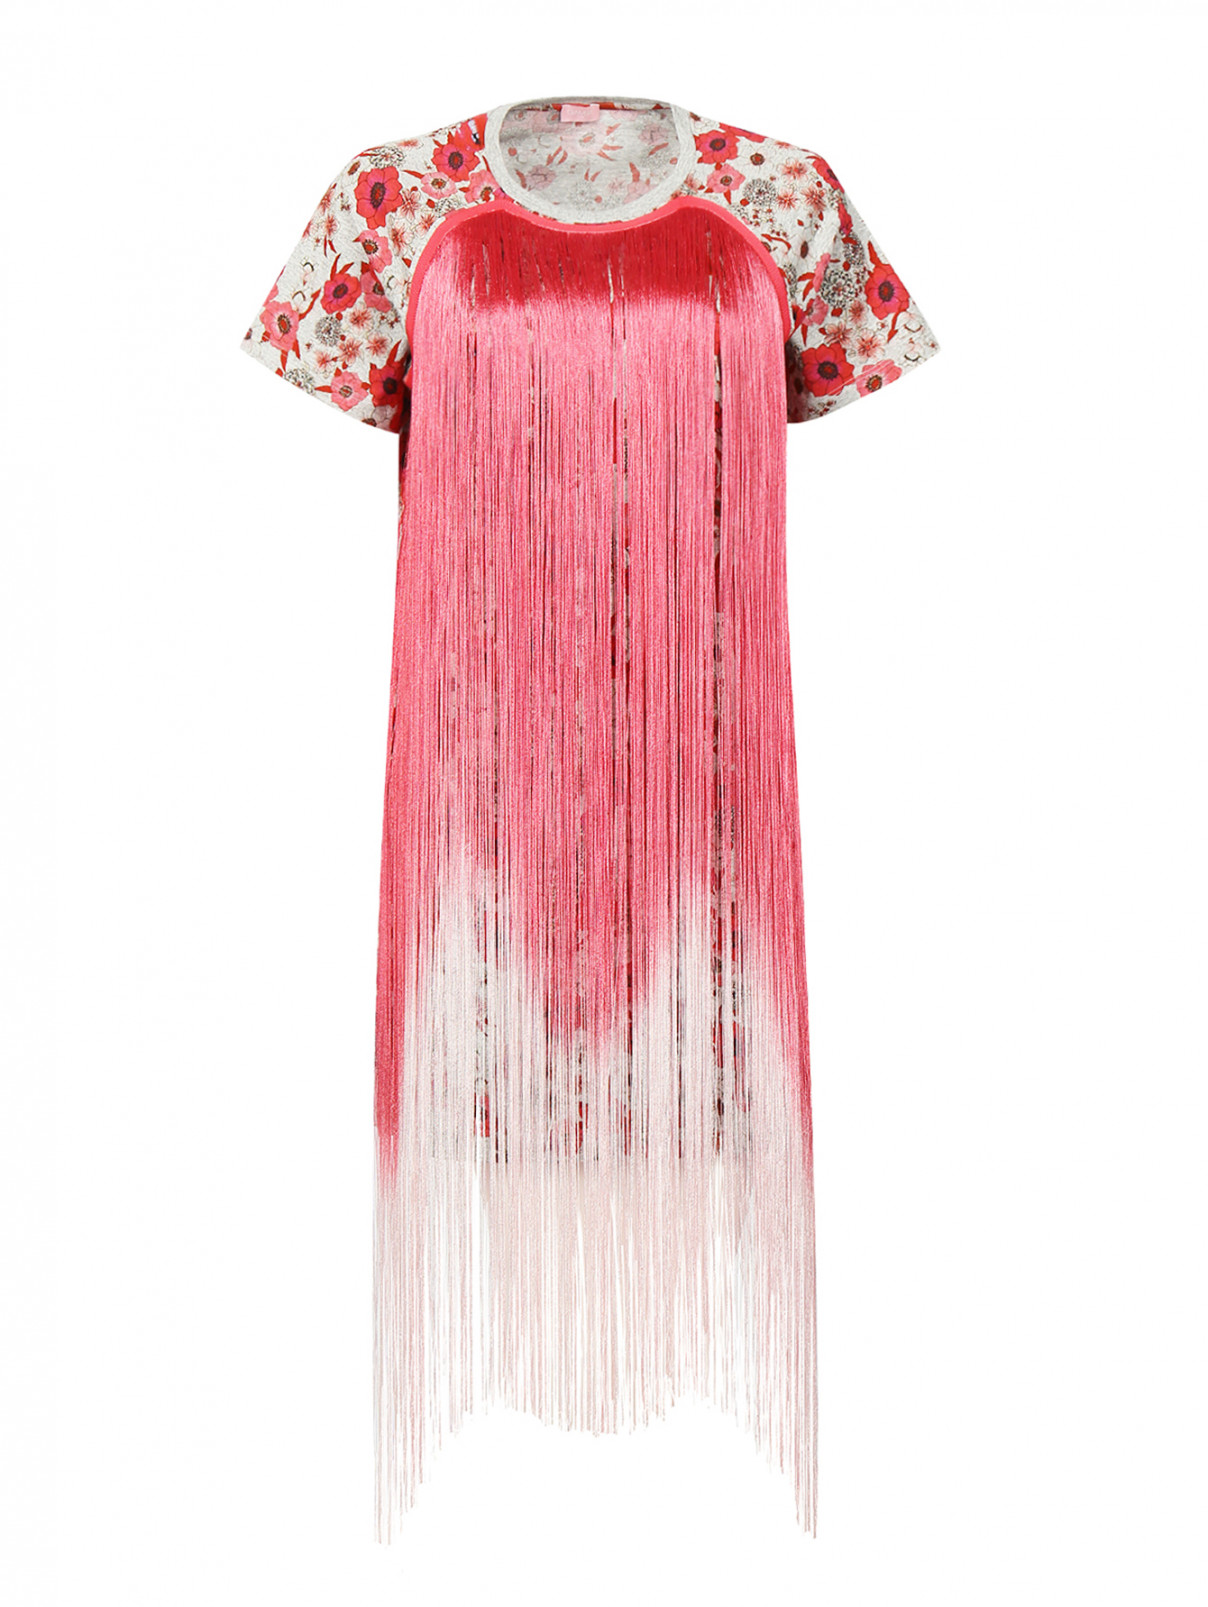 Платье с бахромой из хлопка с цветочным принтом Giamba  –  Общий вид  – Цвет:  Узор